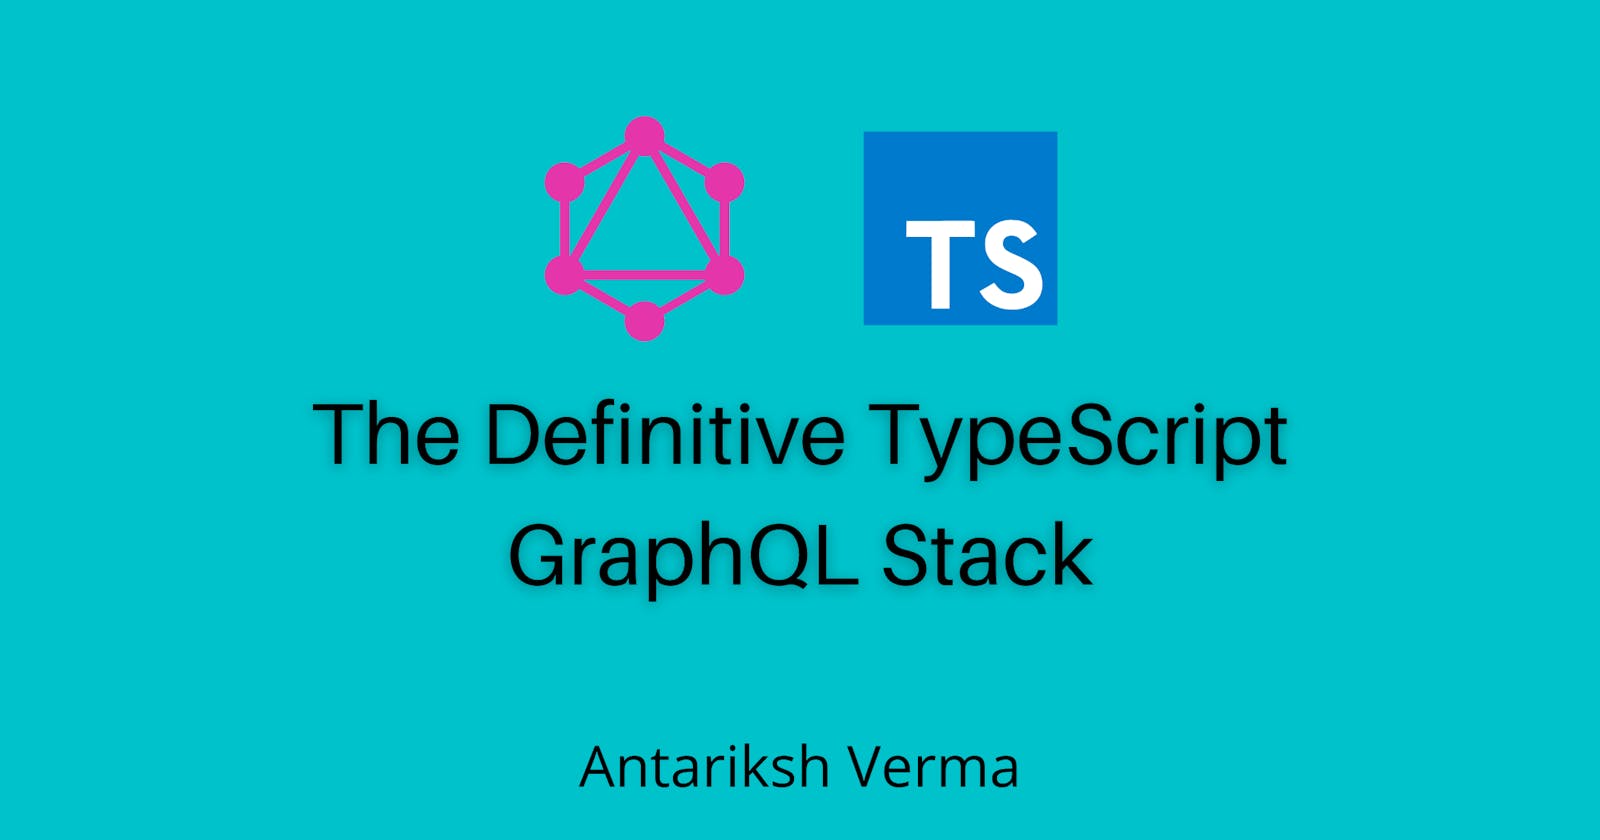 The Definitive TypeScript GraphQL Stack